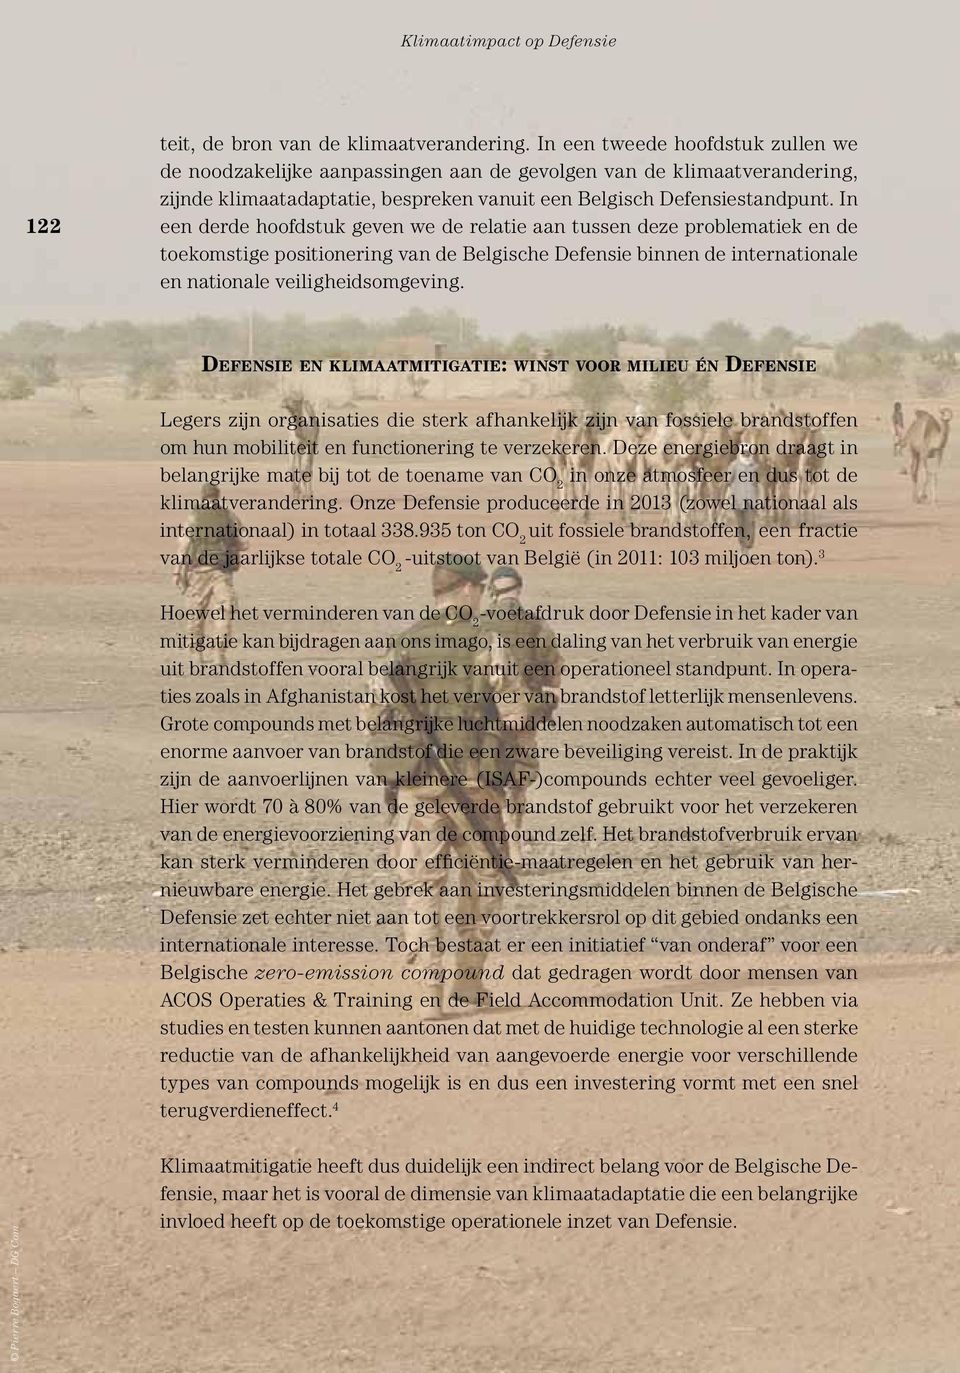 In een derde hoofdstuk geven we de relatie aan tussen deze problematiek en de toekomstige positionering van de Belgische Defensie binnen de internationale en nationale veiligheidsomgeving.